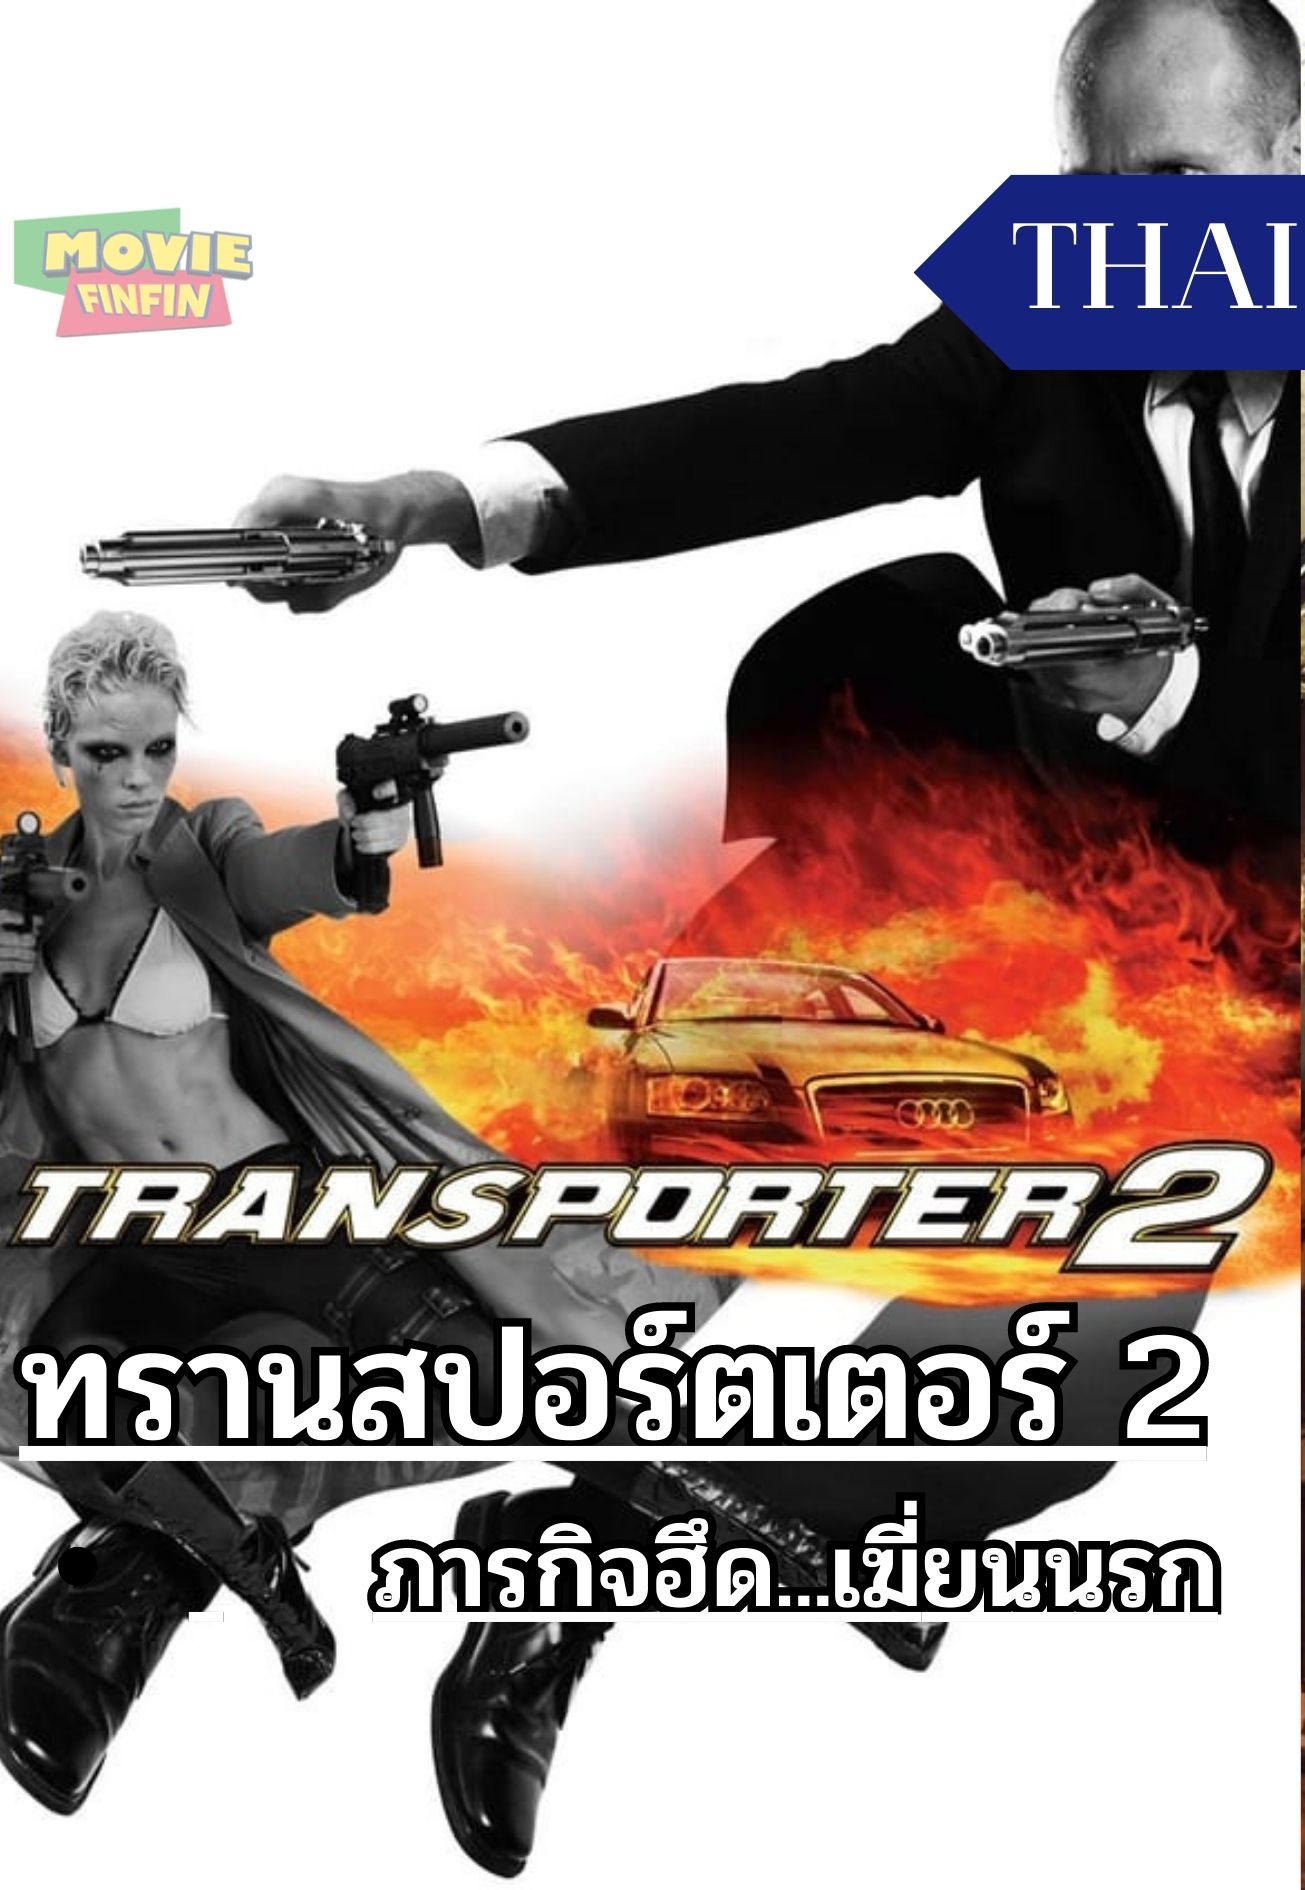 The Transporter 2 (2005) ทรานสปอร์ตเตอร์ 2 ภารกิจฮึด...เฆี่ยนนรก 